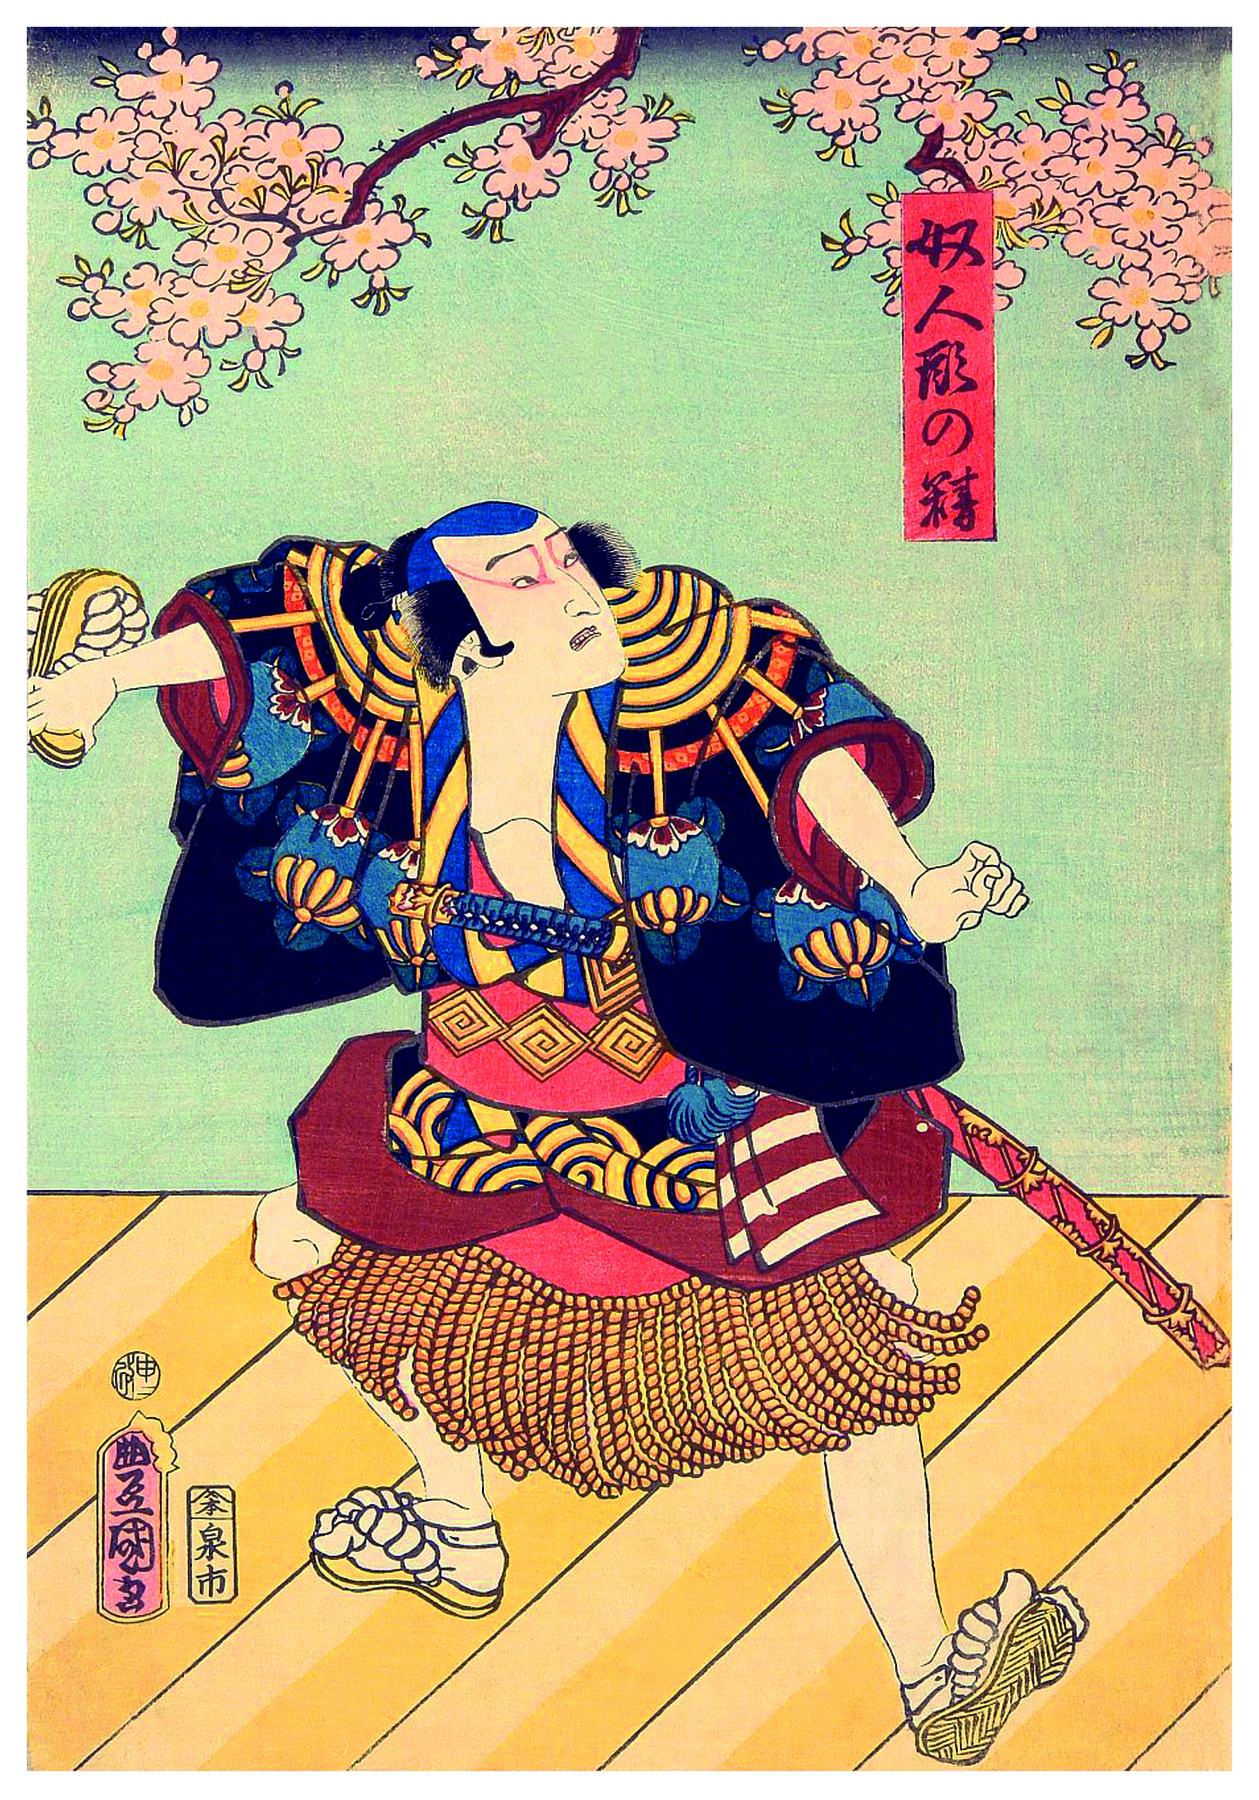 Gravura. Sobre o fundo de uma parede azul, no centro, um homem vestido de samurai em local fechado com piso de tábuas verticais de cor amarela. Ele tem cabelos pretos presos em um coque, usa um lenço azul sobre a cabeça, olha para à direita, tem lábios finos entreabertos. Usa uma blusa de mangas curtas azul, com estampas em laranja, amarelo e marrom, aberta, com o peito nu. Na cintura, usa uma faixa vermelha e dourada e um saiote em vermelho com franjas longas amarelas. Ele usa nos pés um par de chinelos amarelos com cordões com bolas de cor bege. Na cintura, uma espada com bainha vermelha e dourada e cabo azul e dourado. Ele segura na mão esquerda um par de chinelos amarelos.  No alto, vista parcial de galhos marrons de cerejeiras, com flores de pétalas pequenas em cor de rosa. Na ponta inferior esquerda e na parte superior à direita, textos escritos com caracteres japoneses.